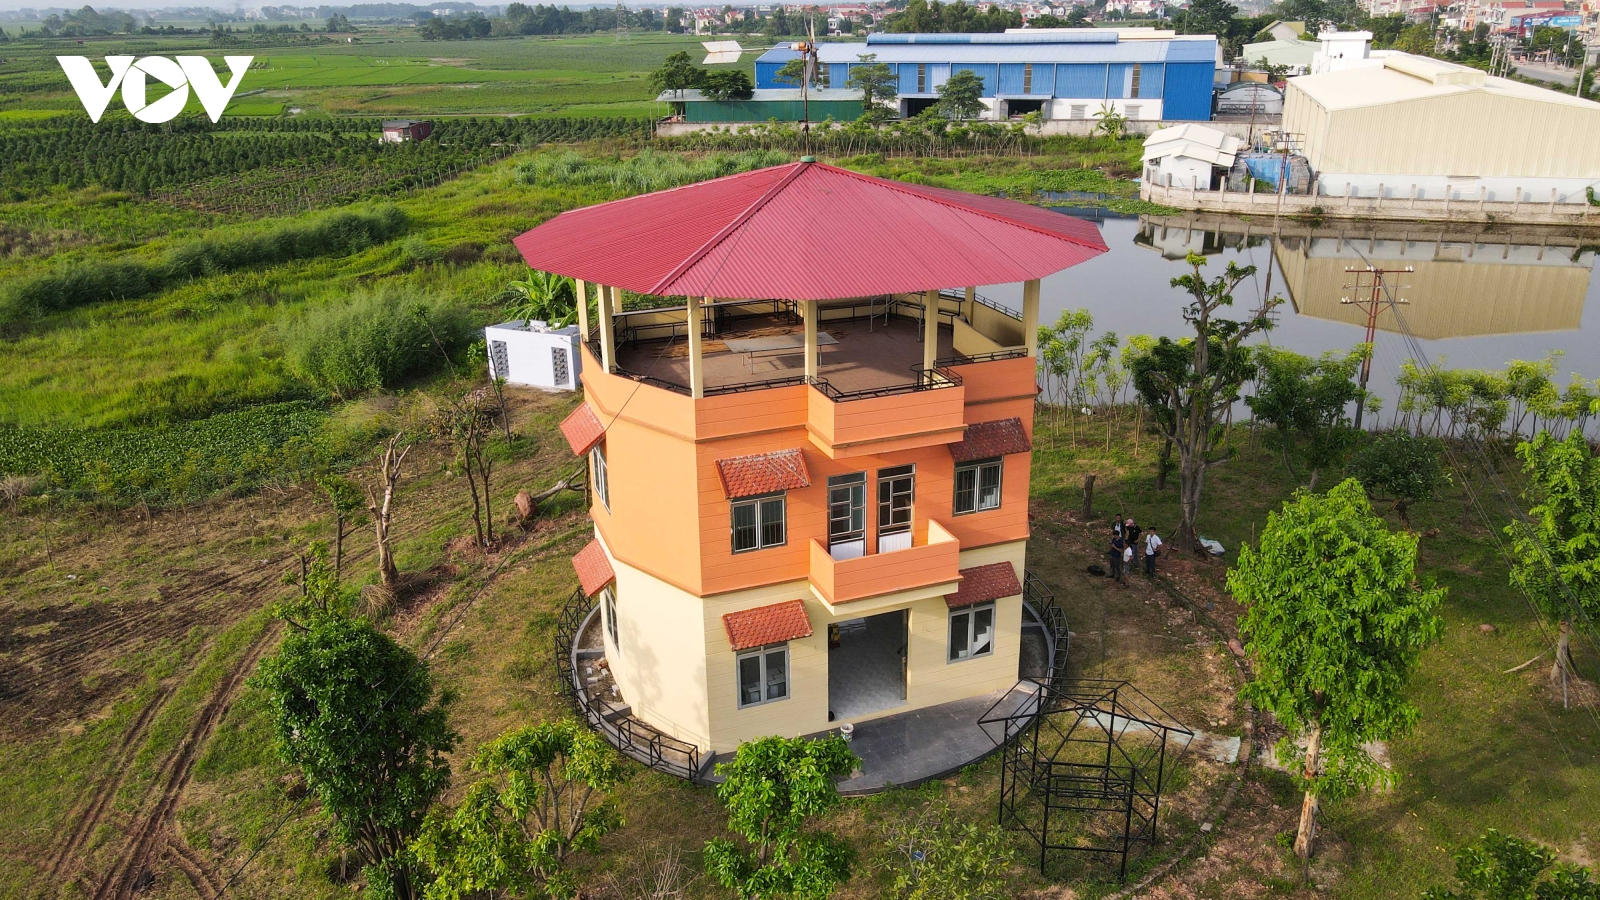 Độc lạ ngôi nhà 420 tấn quay 360 độ ở Bắc Giang